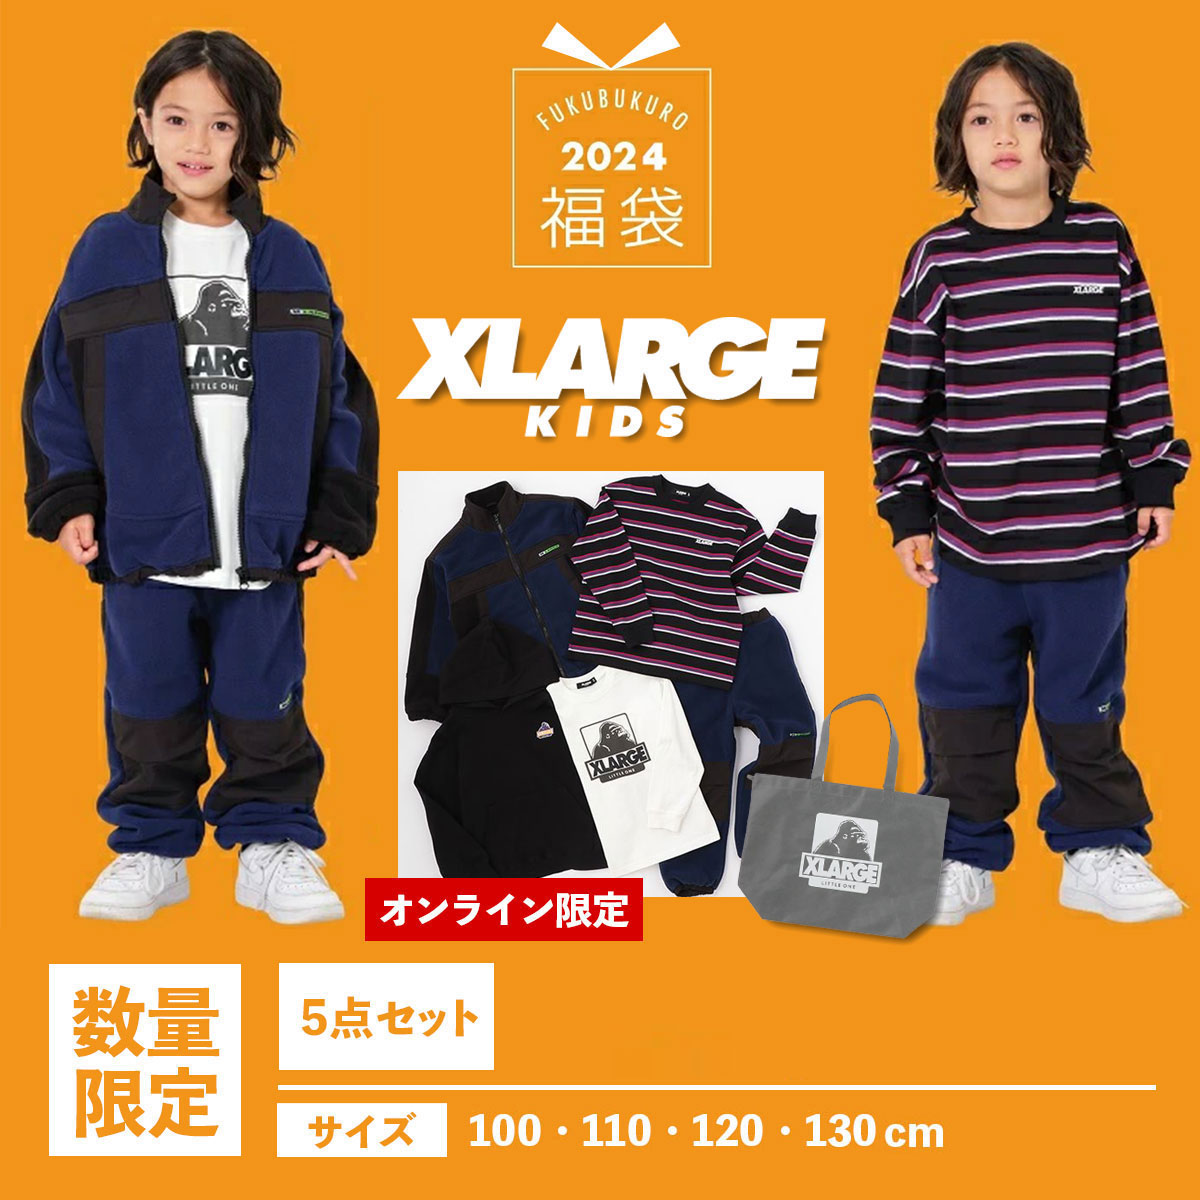 x-large kids